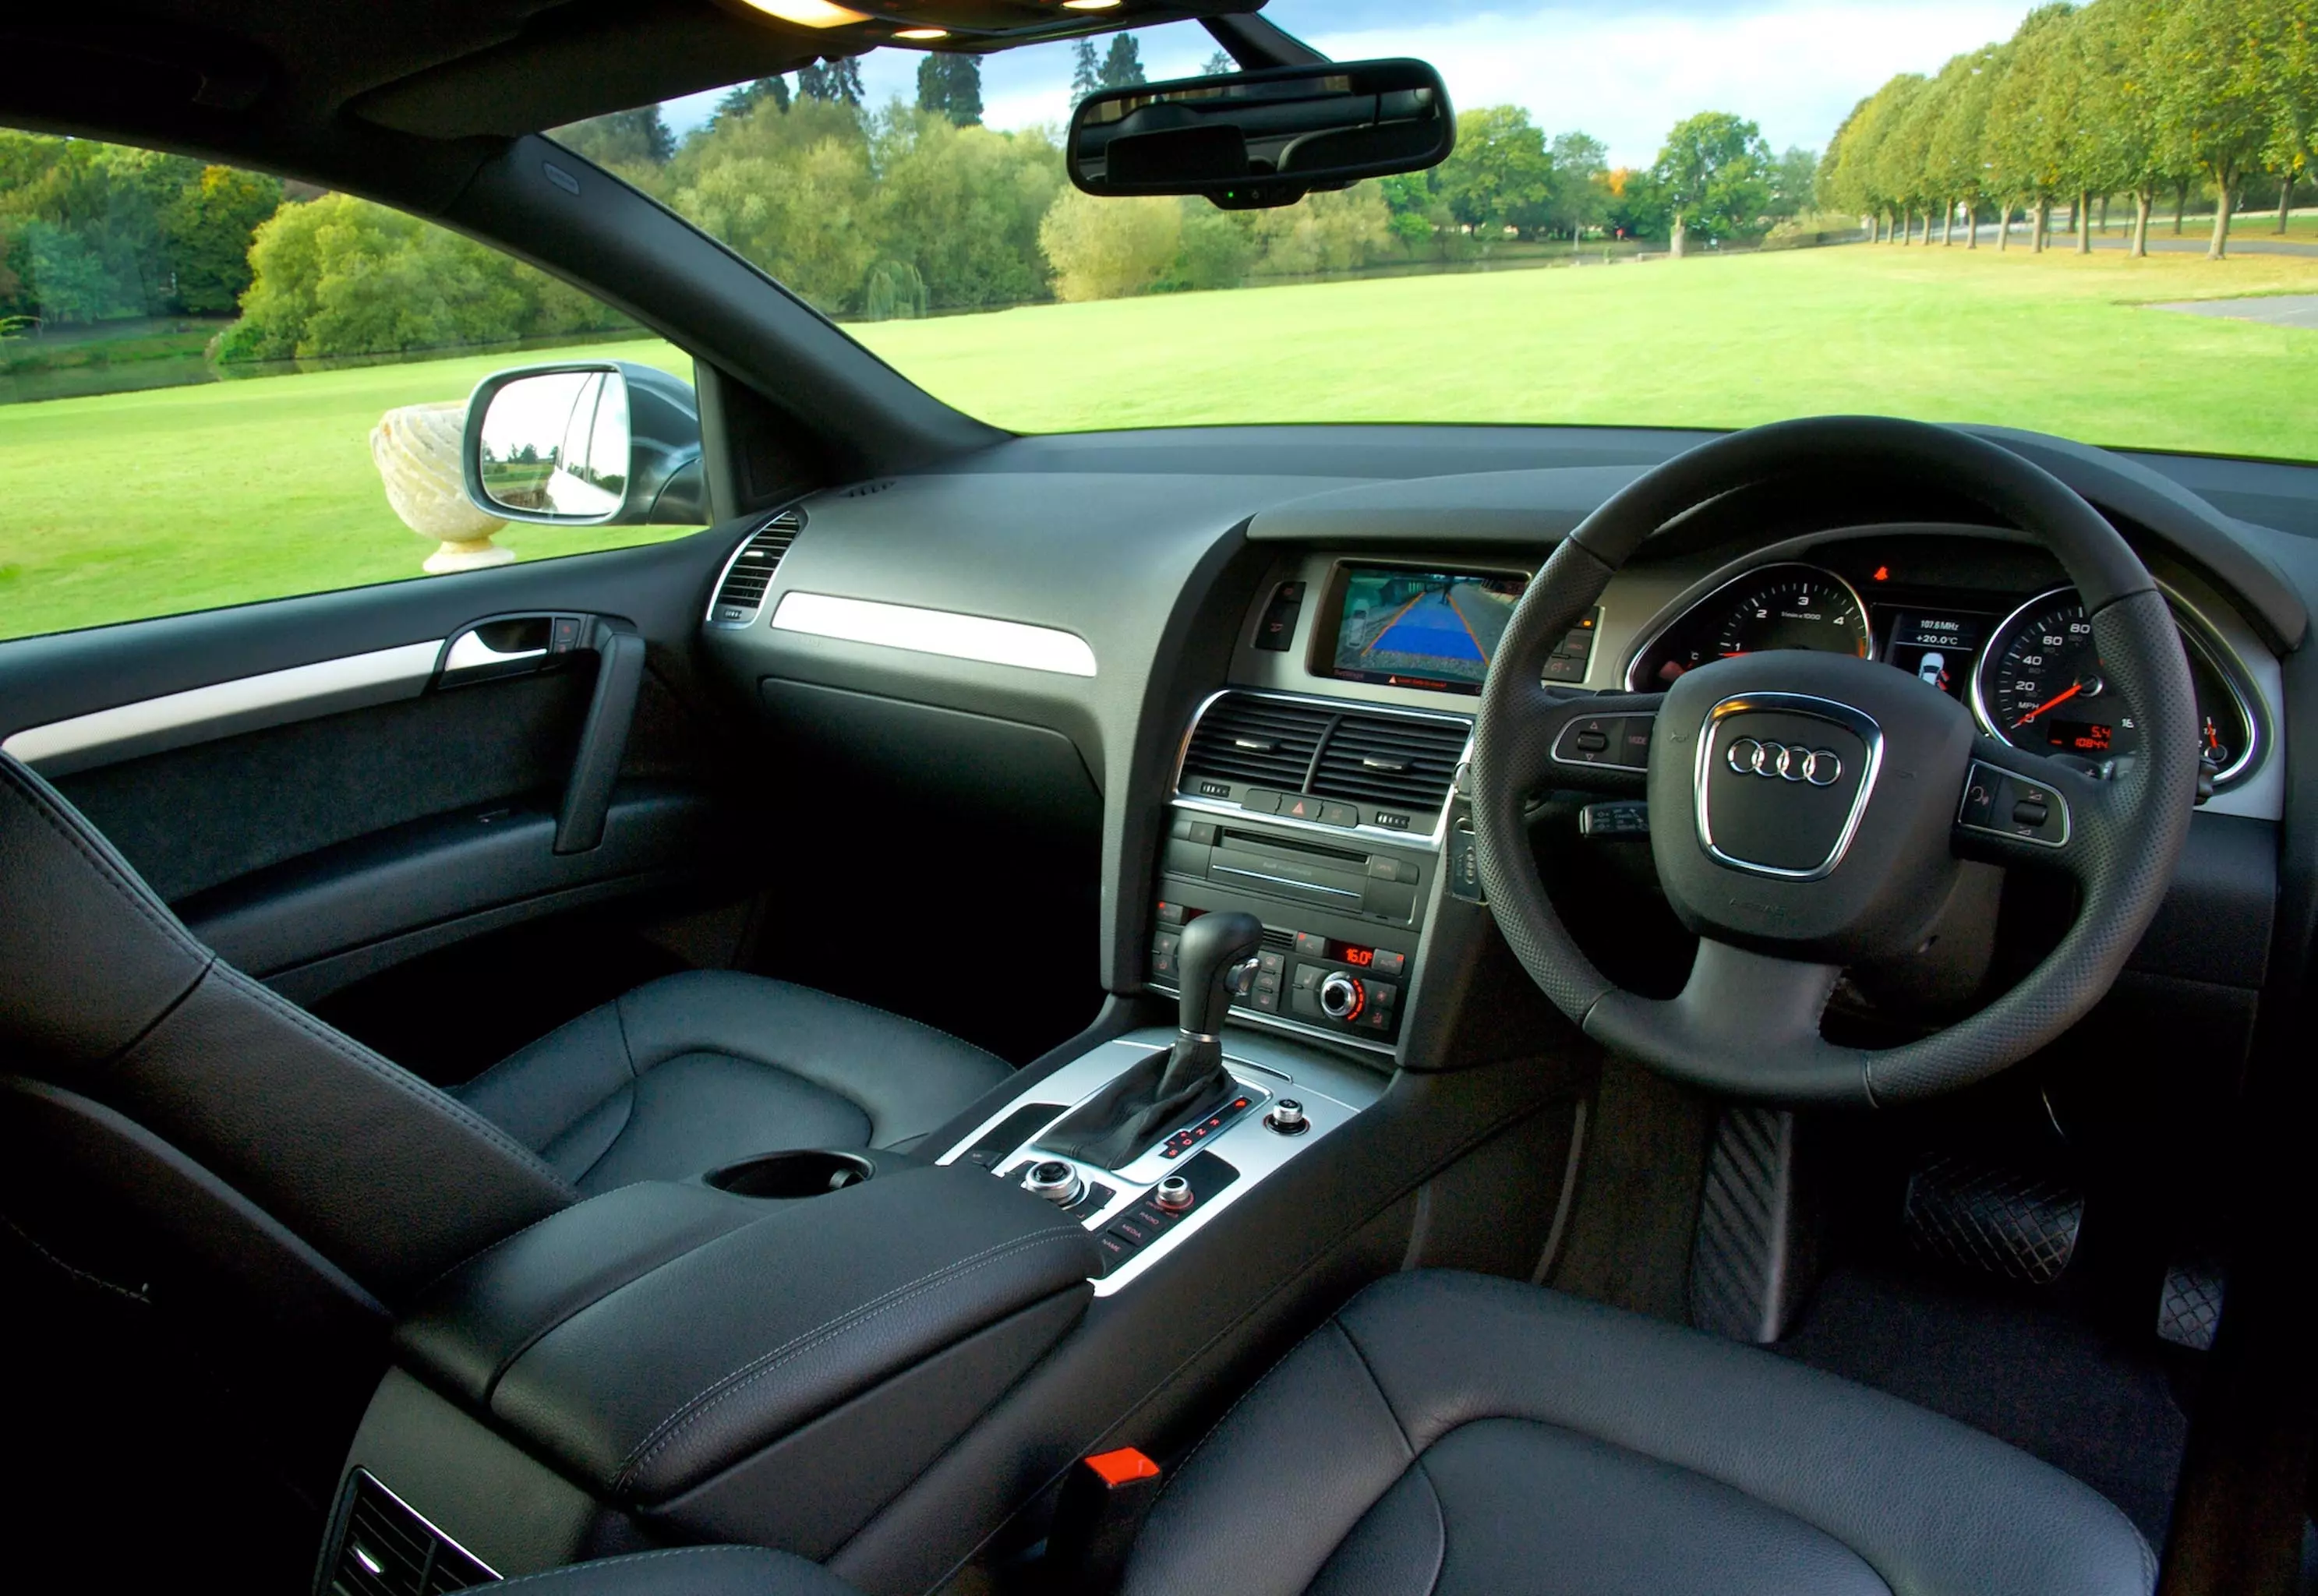 Audi Q7 common problems (2005-2015)